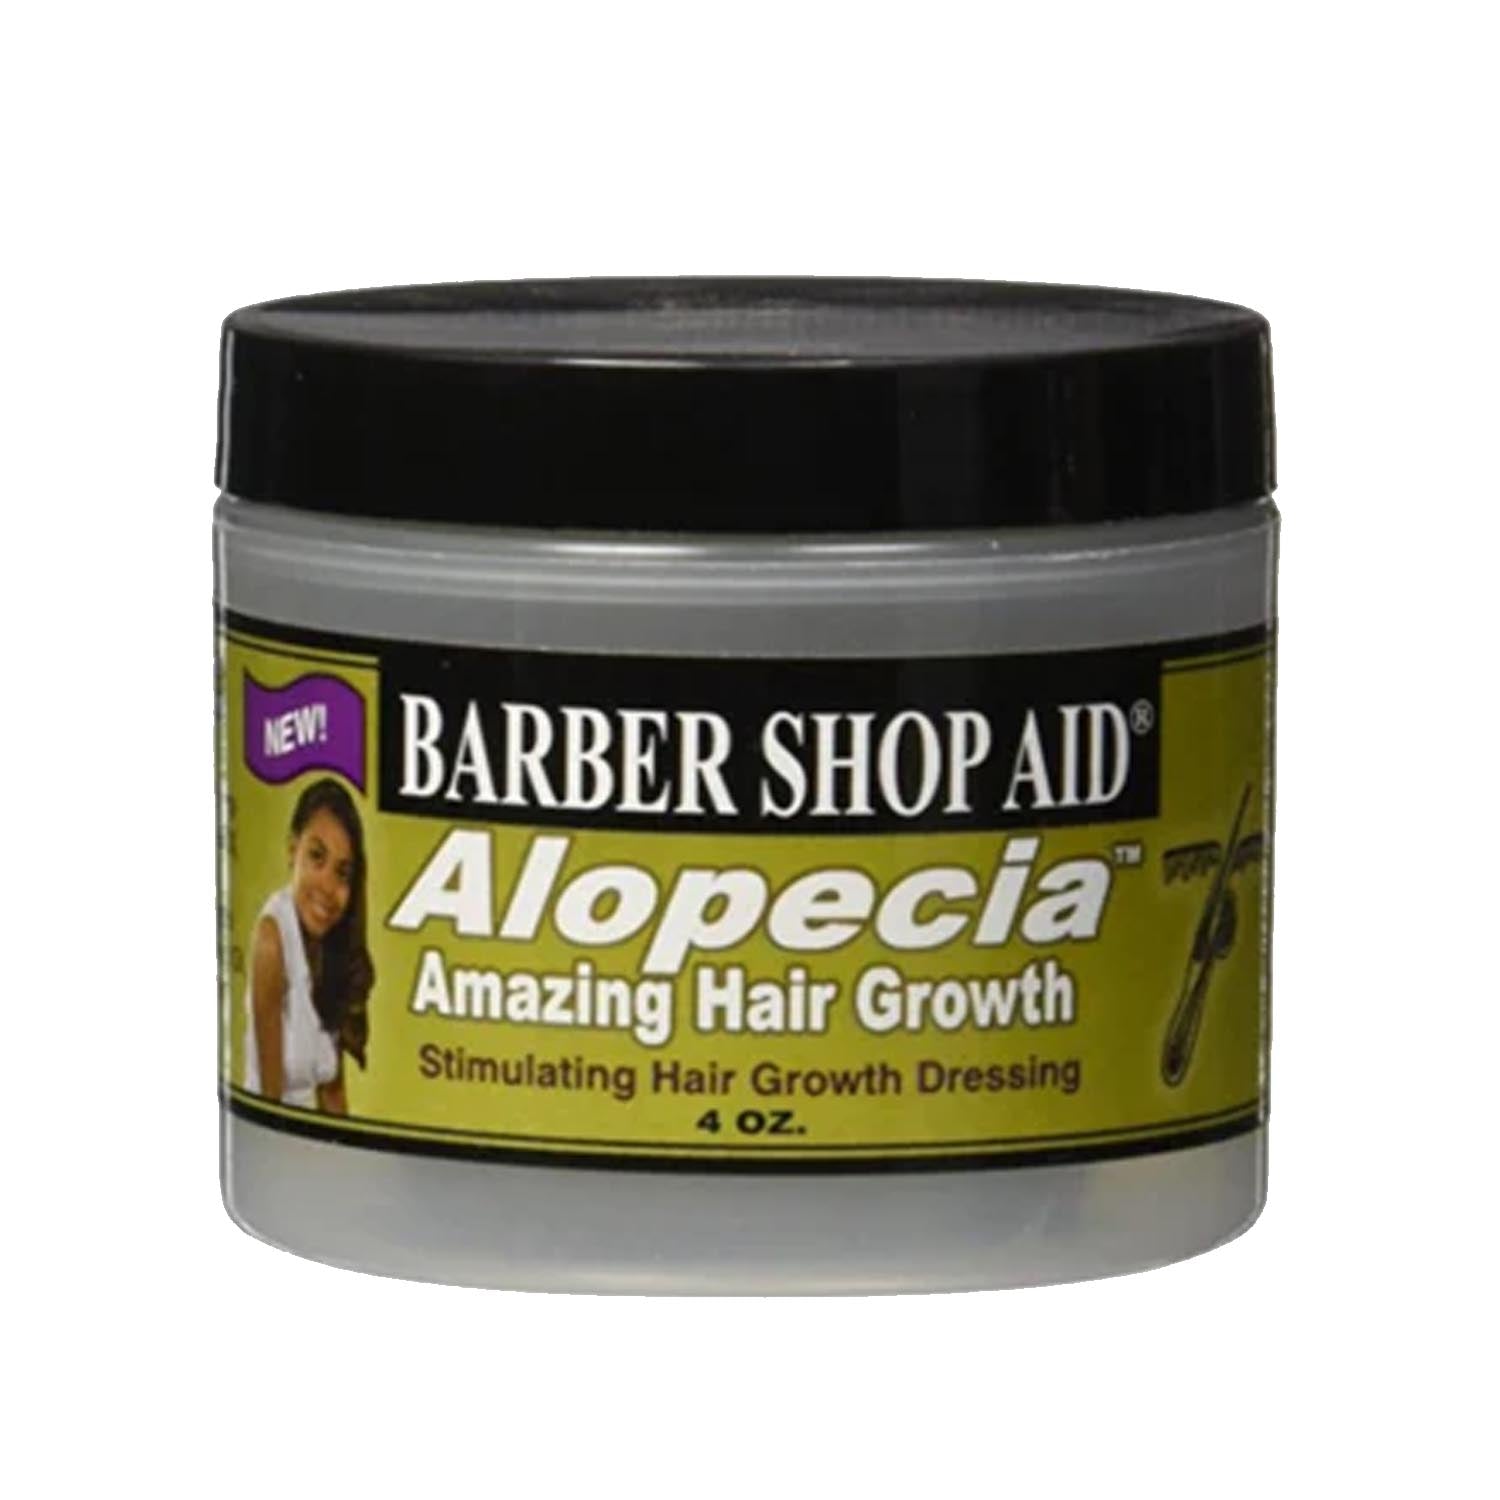 Barber Shop Aid Alopecia Amazing Hair Growth Dressing 4 oz